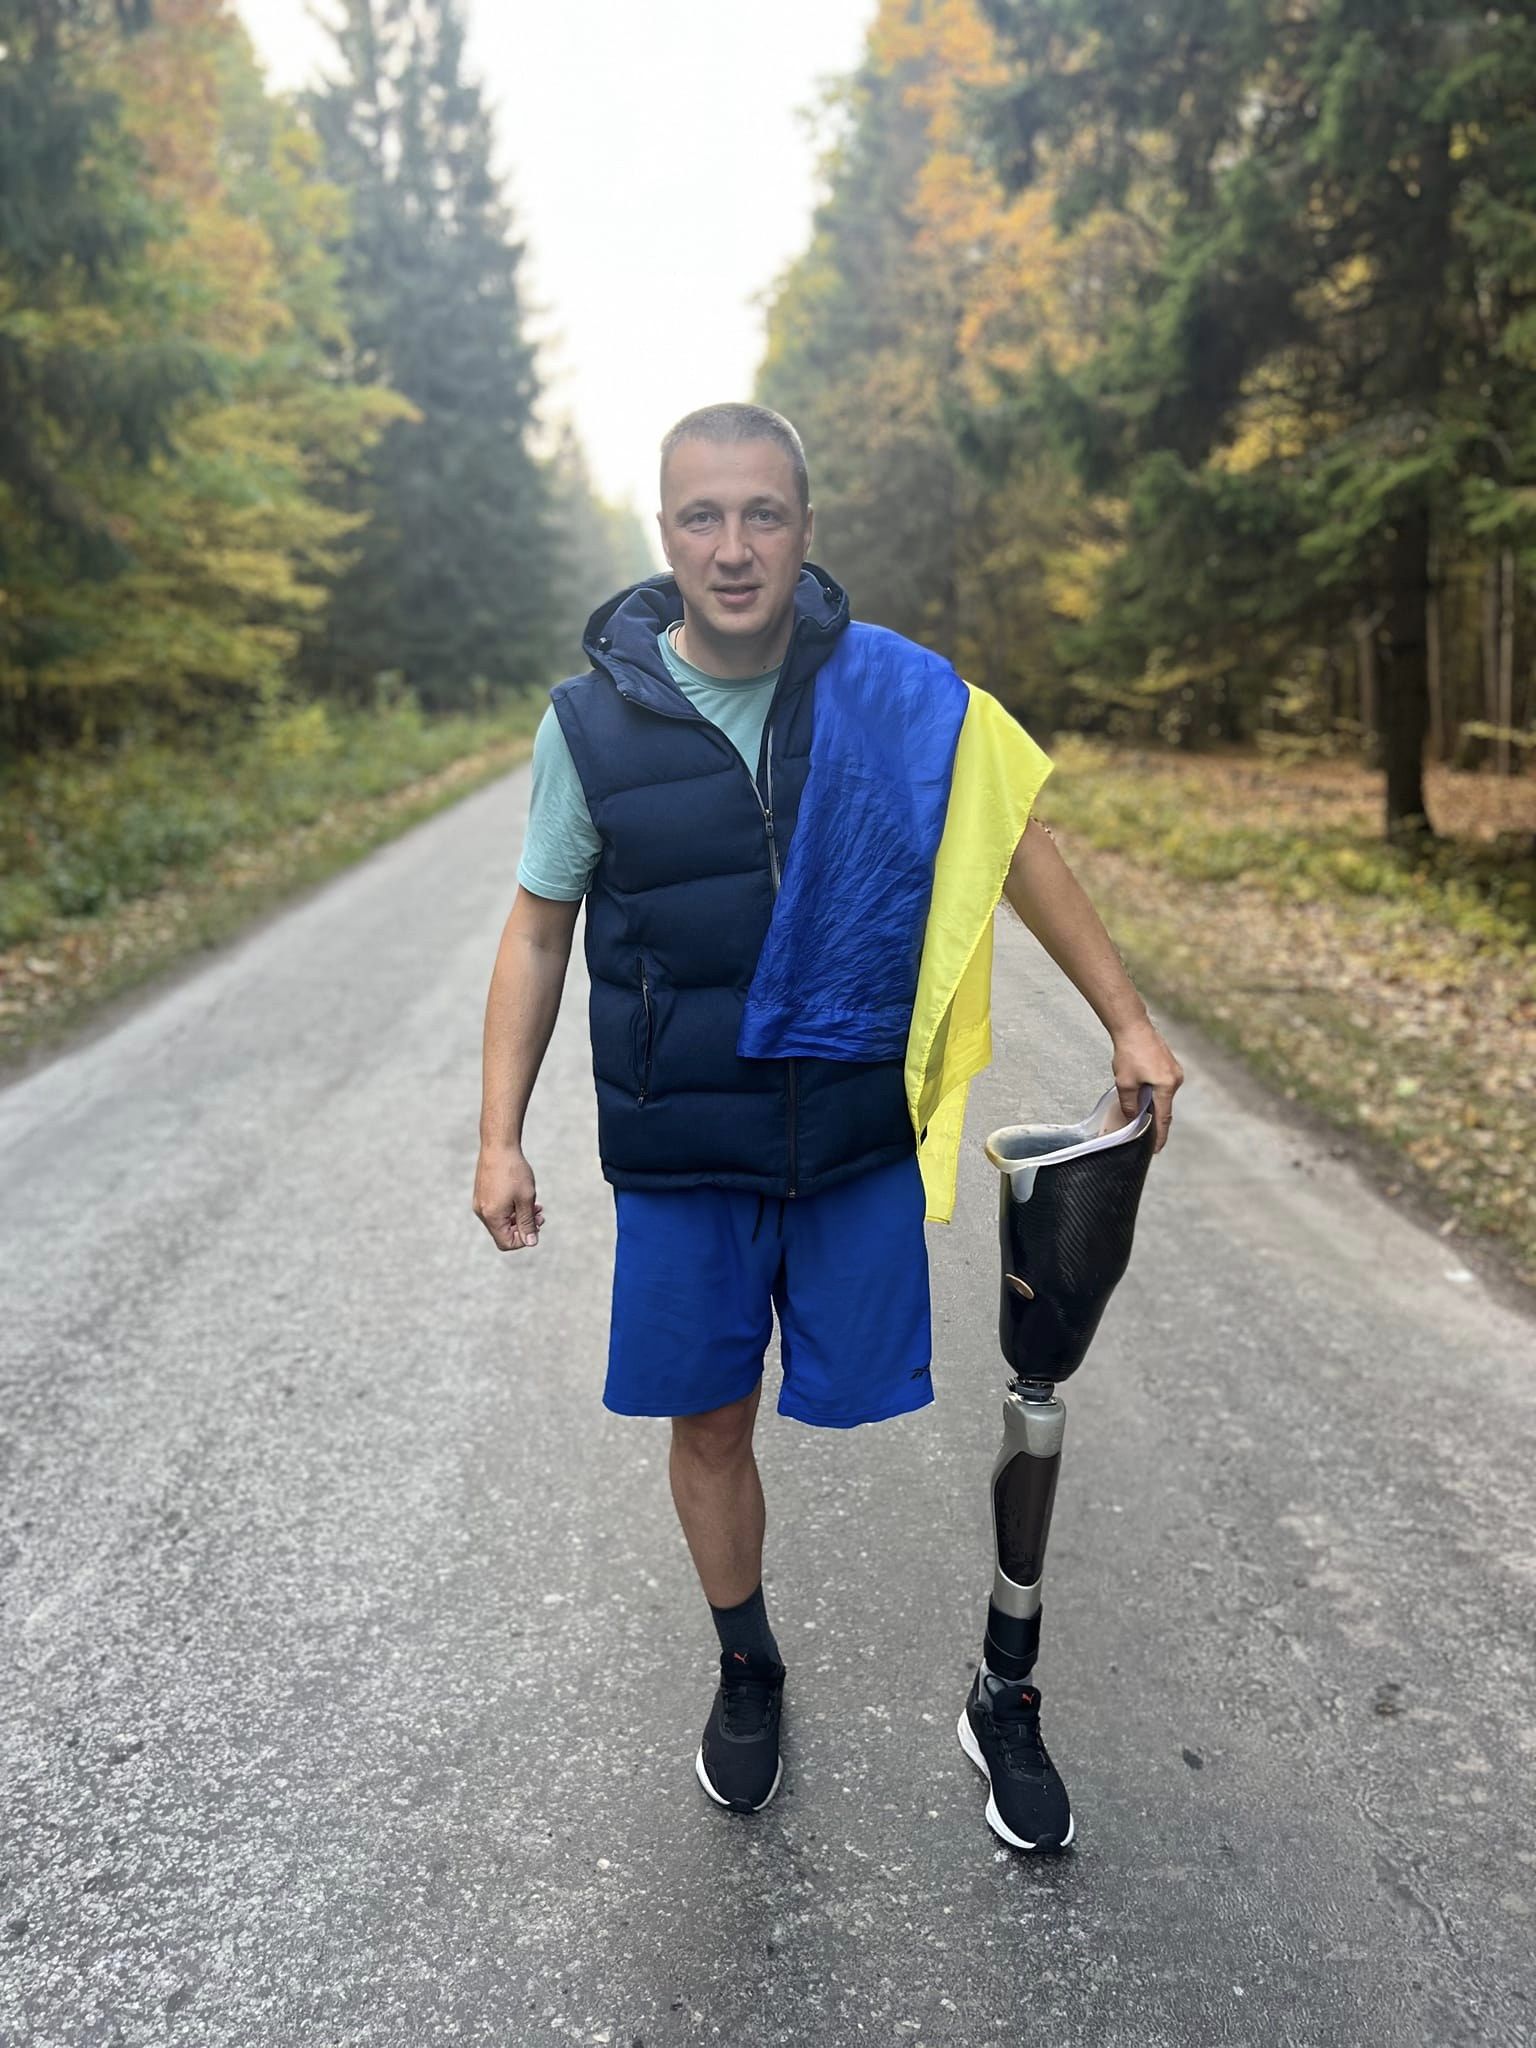 За сім днів Олександр Швецов на протезі подолав 65 км